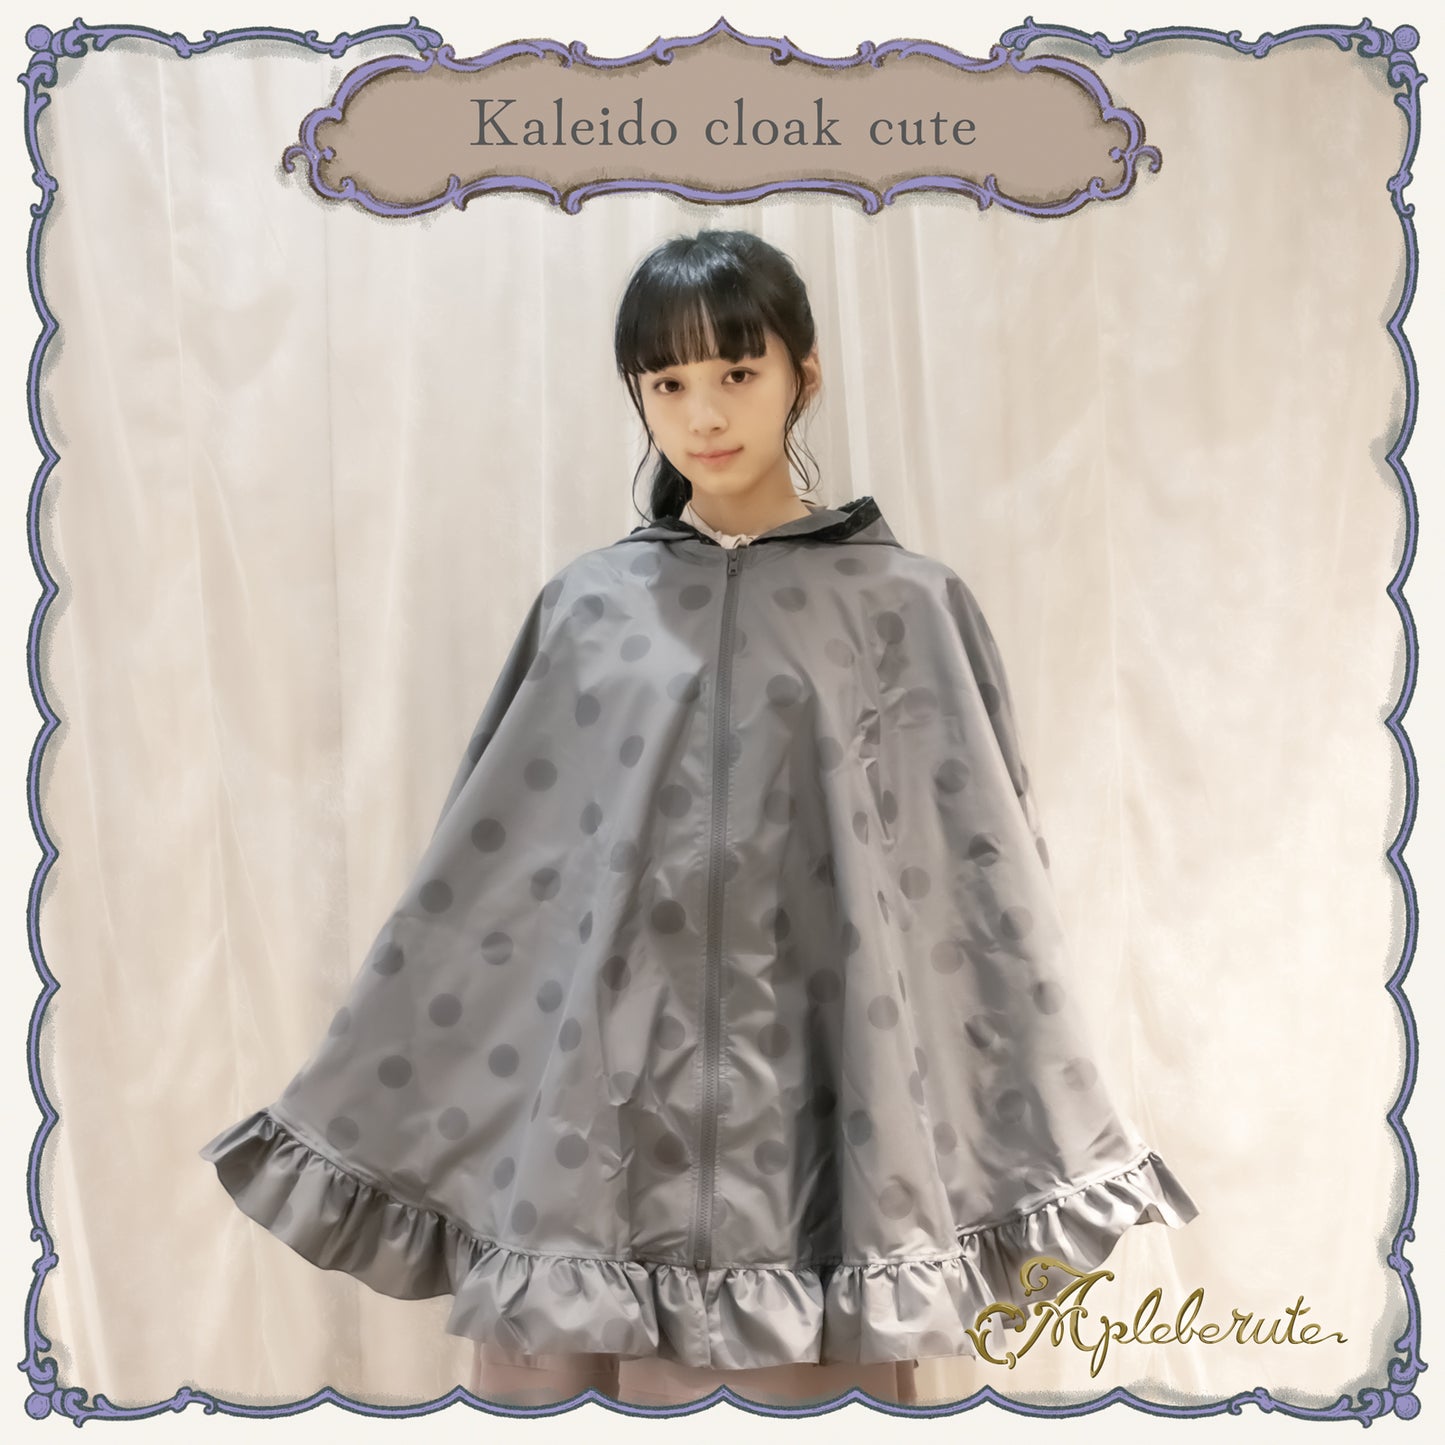 【New】kaleido-cloak-cute (カレイド クローク キュート) - ポンチョ レインポンチョ フリル 超撥水 収納ポーチ付き